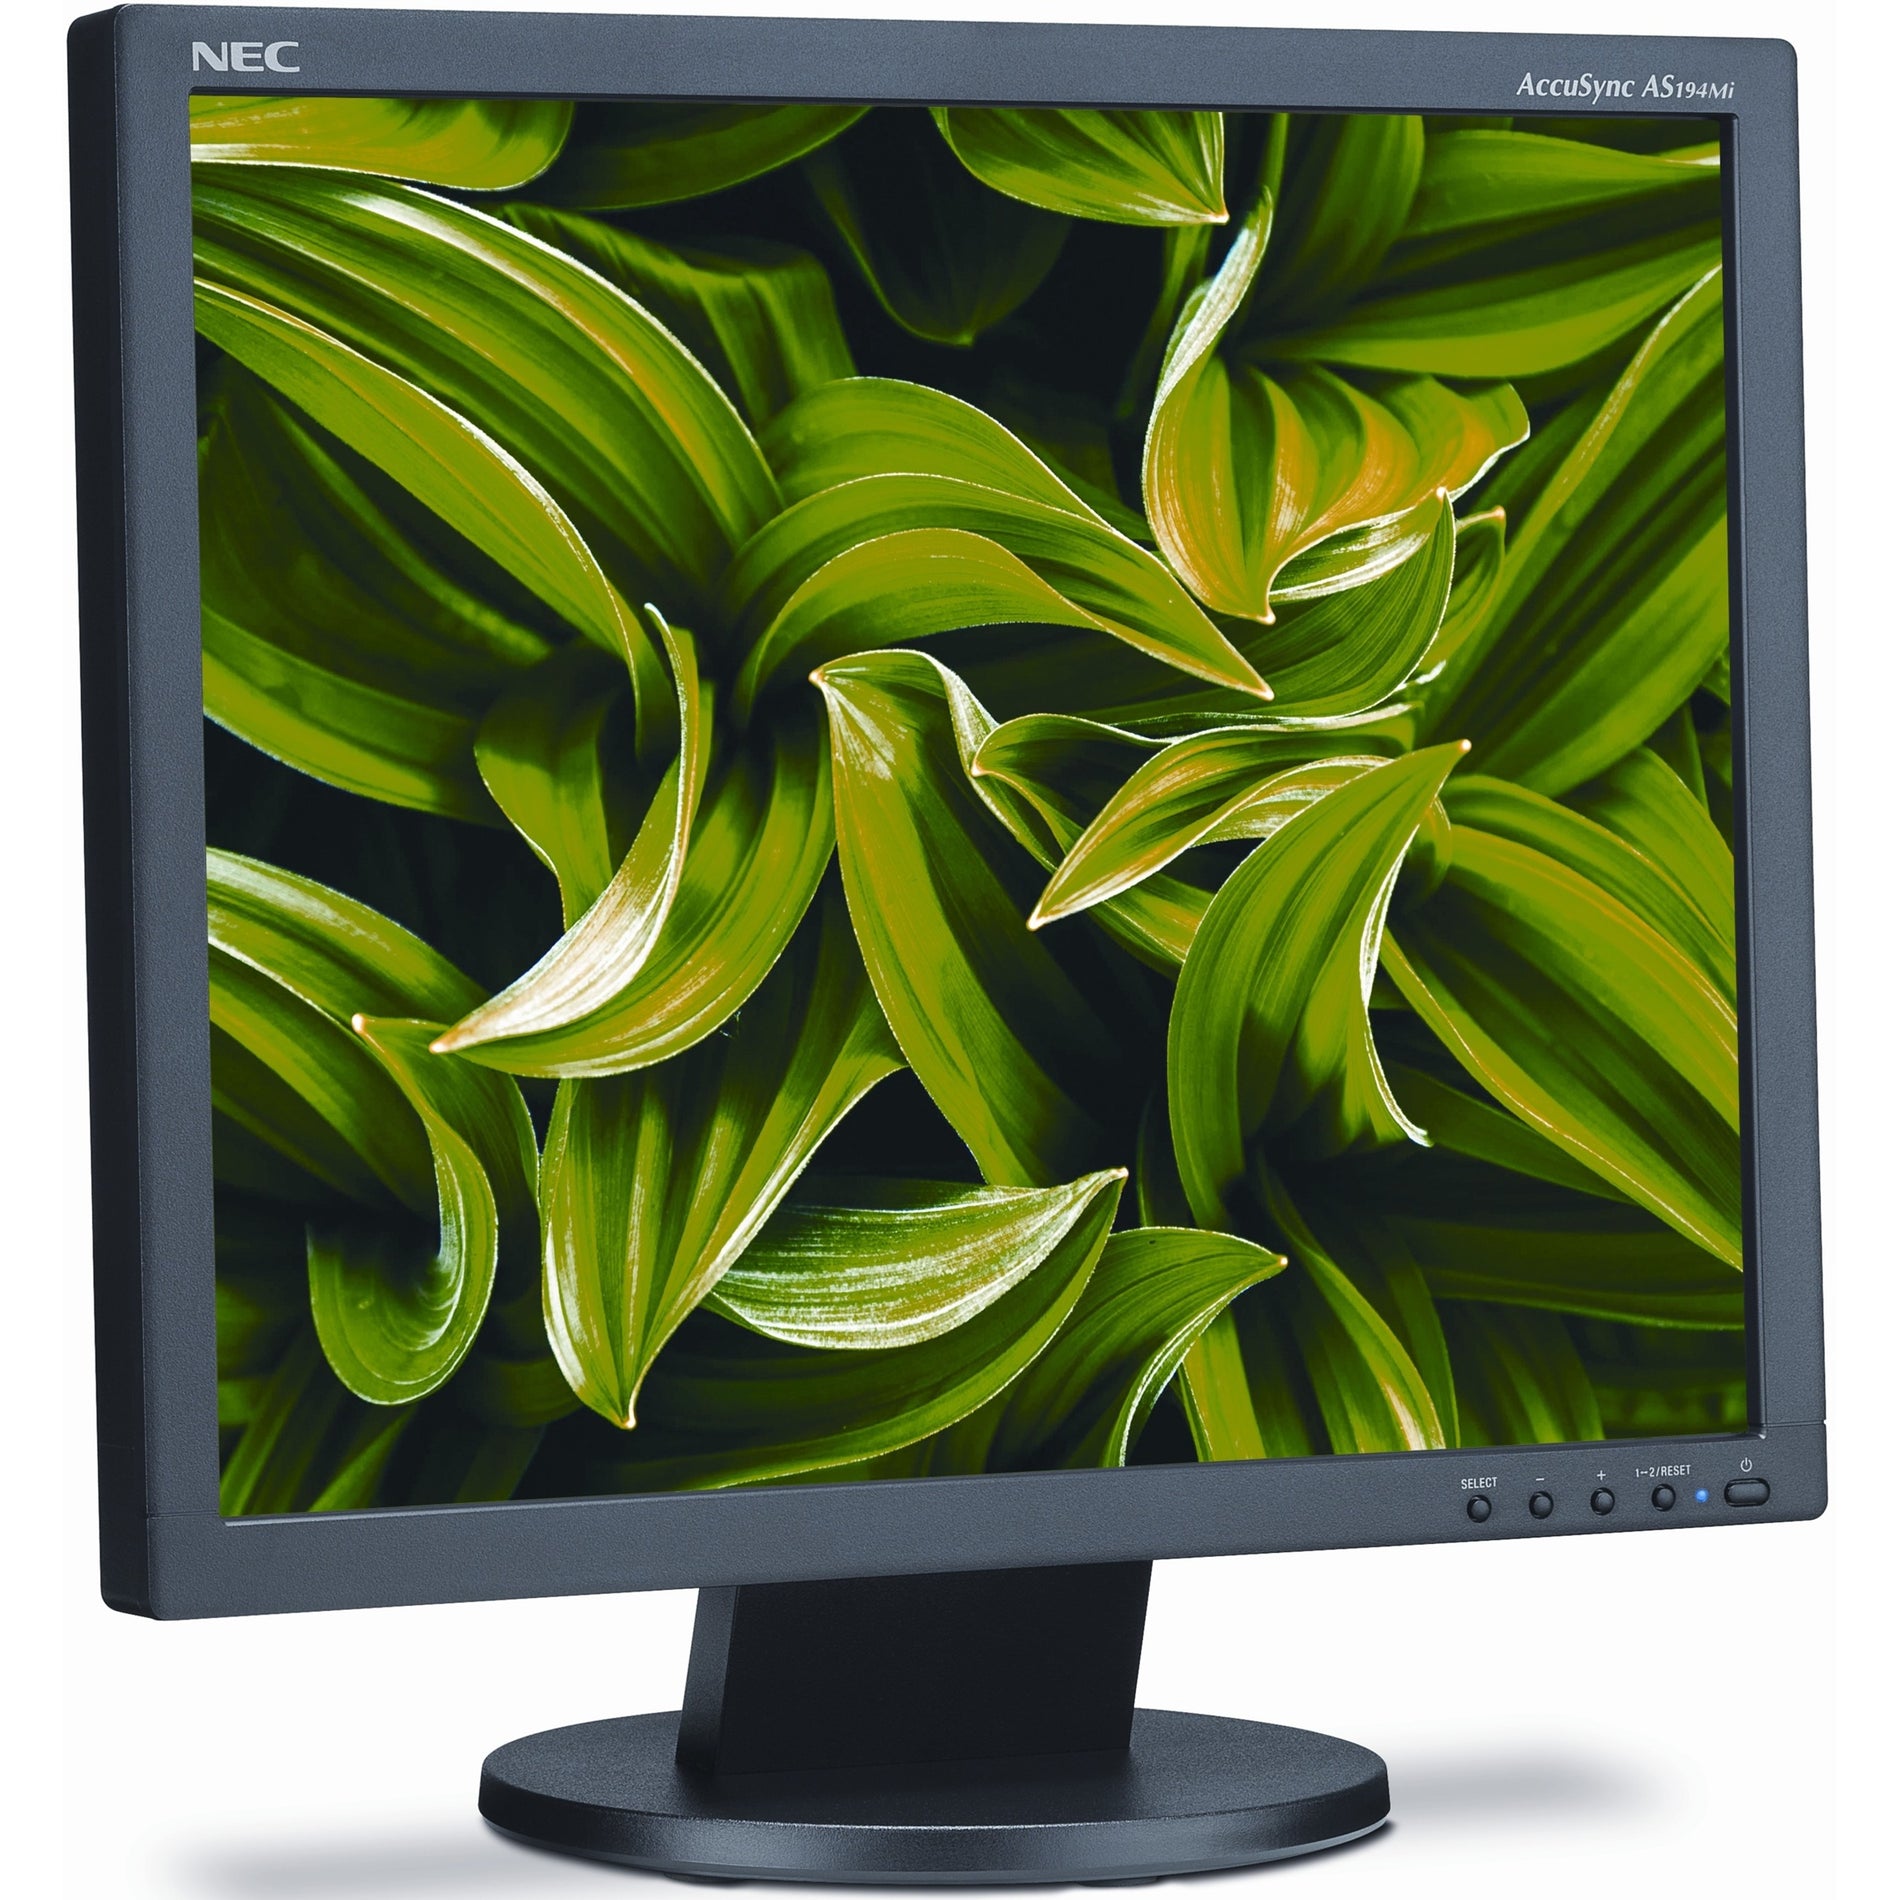 NEC Display AS194MI-BK AccuSync 19" LCD Monitor, SXGA, 5:4, 1280 x 1024, 75Hz, 1000:1, WLED, HDMI, DisplayPort